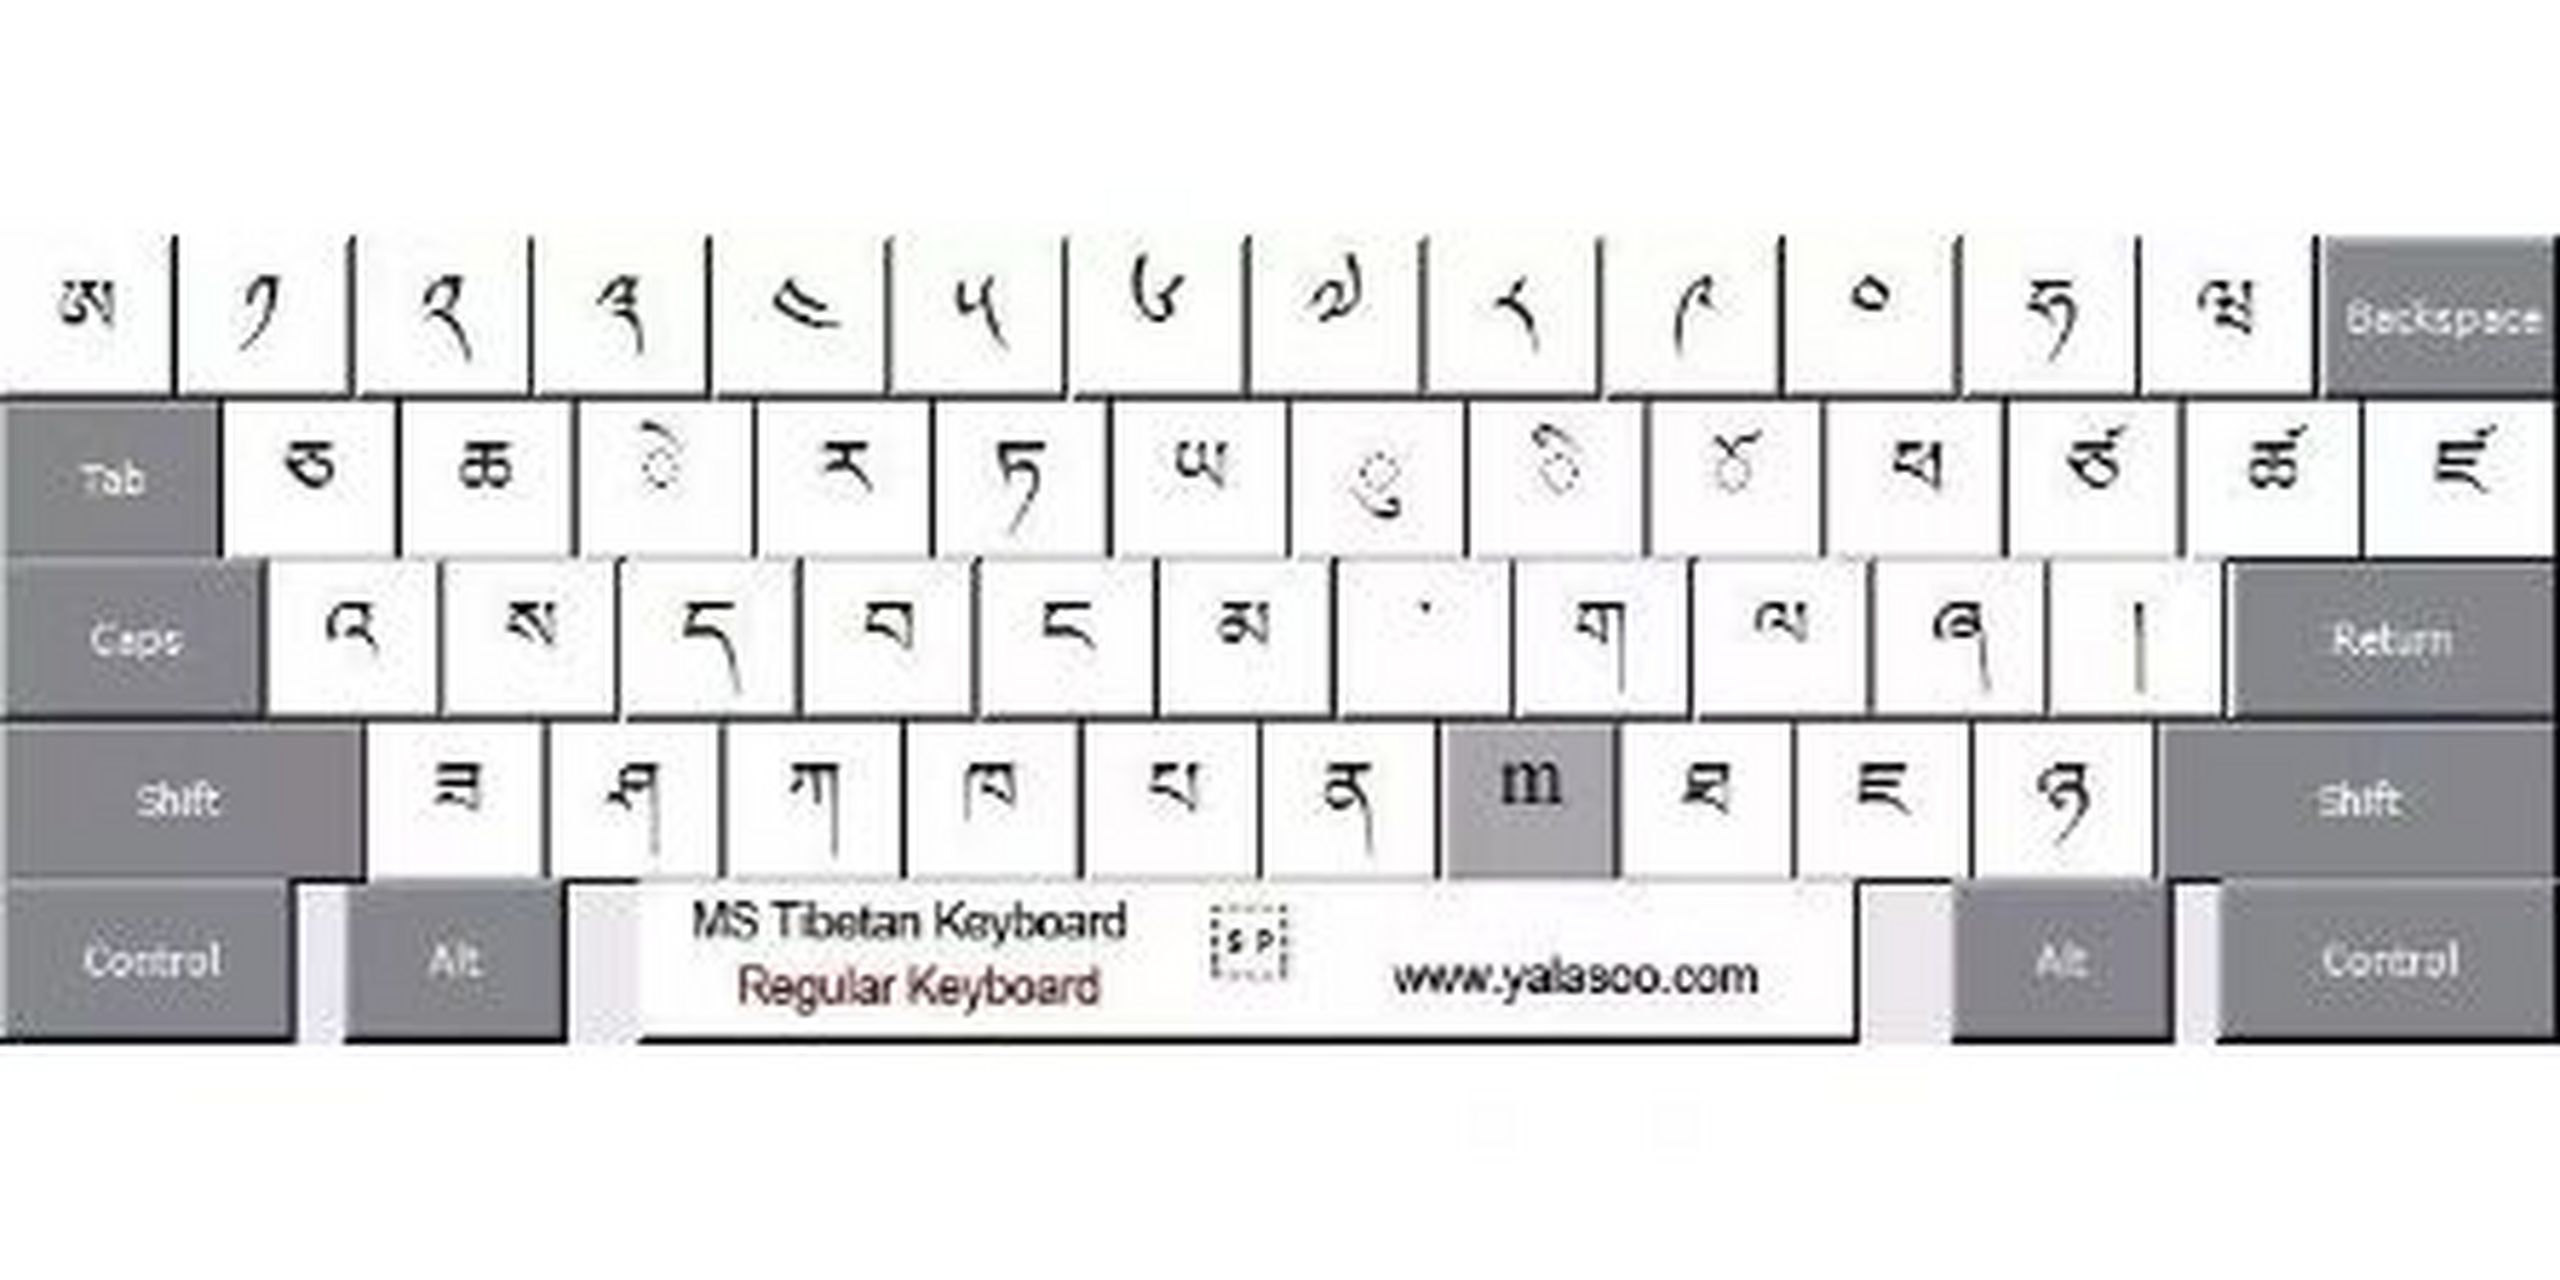 藏语班智达键盘图片